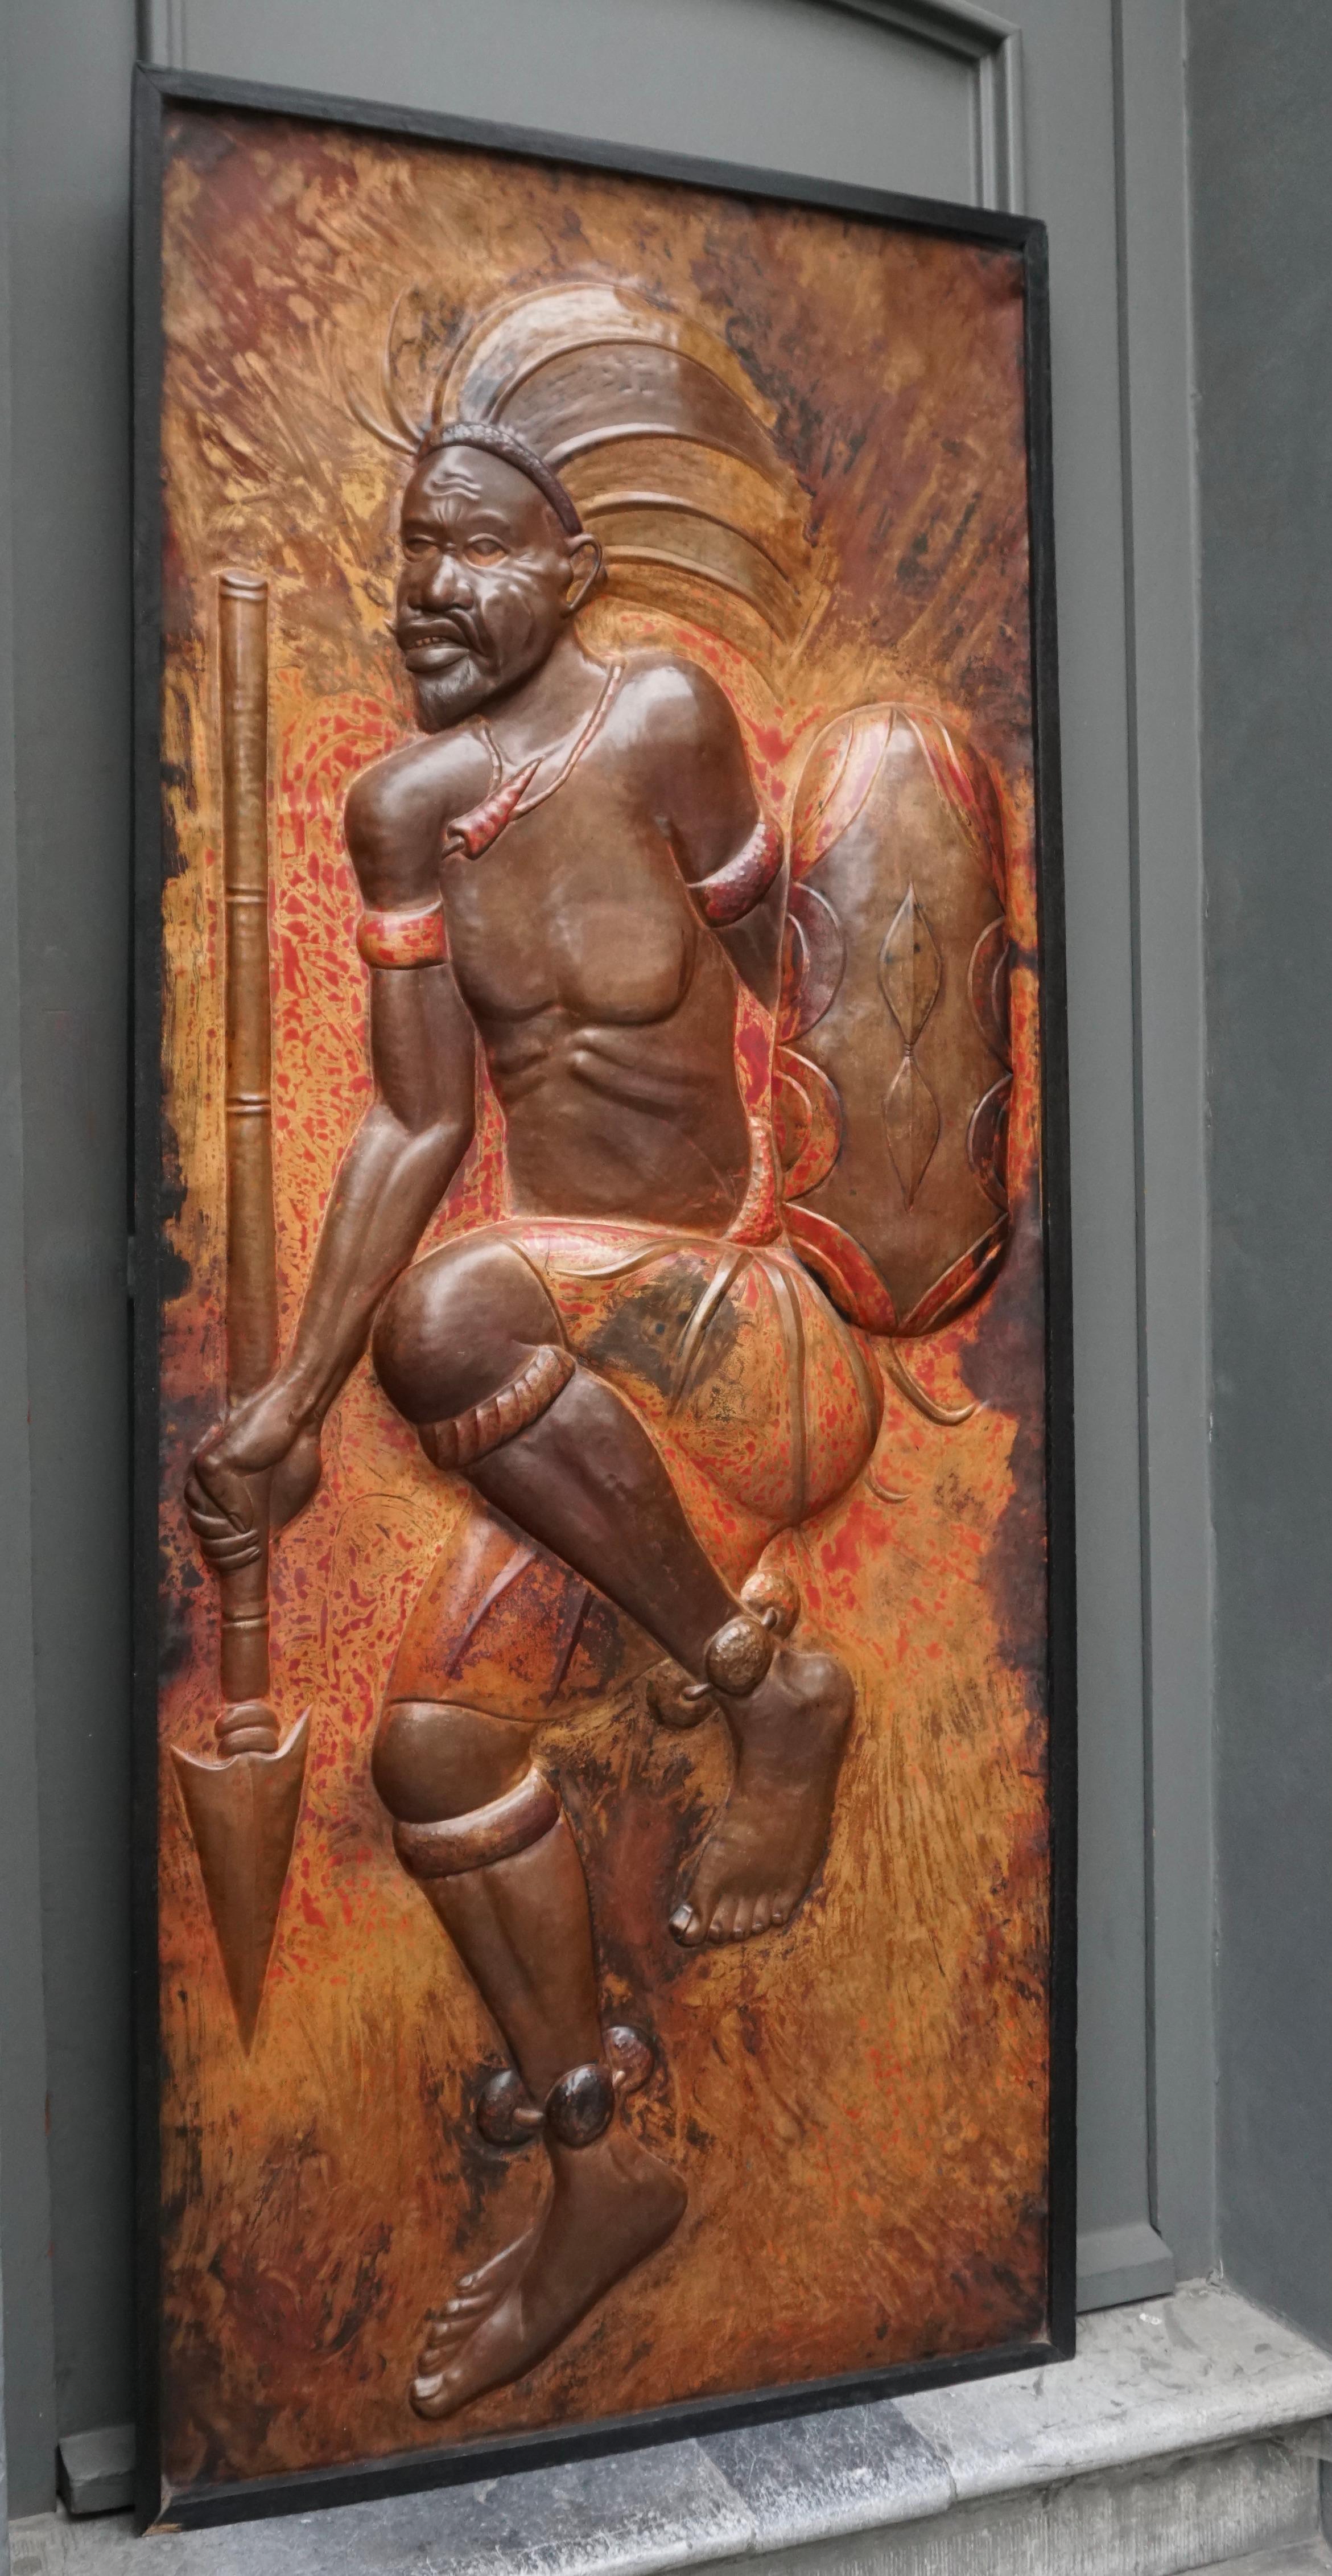 Rare et magnifique panneau de cuivre martelé grandeur nature représentant un guerrier africain dansant avec sa lance et son bouclier.

Panneau en cuivre forgé dans le style du célèbre artiste zaïrois Gabriel Kalumba Tshung Manu (1940-2019), qui a